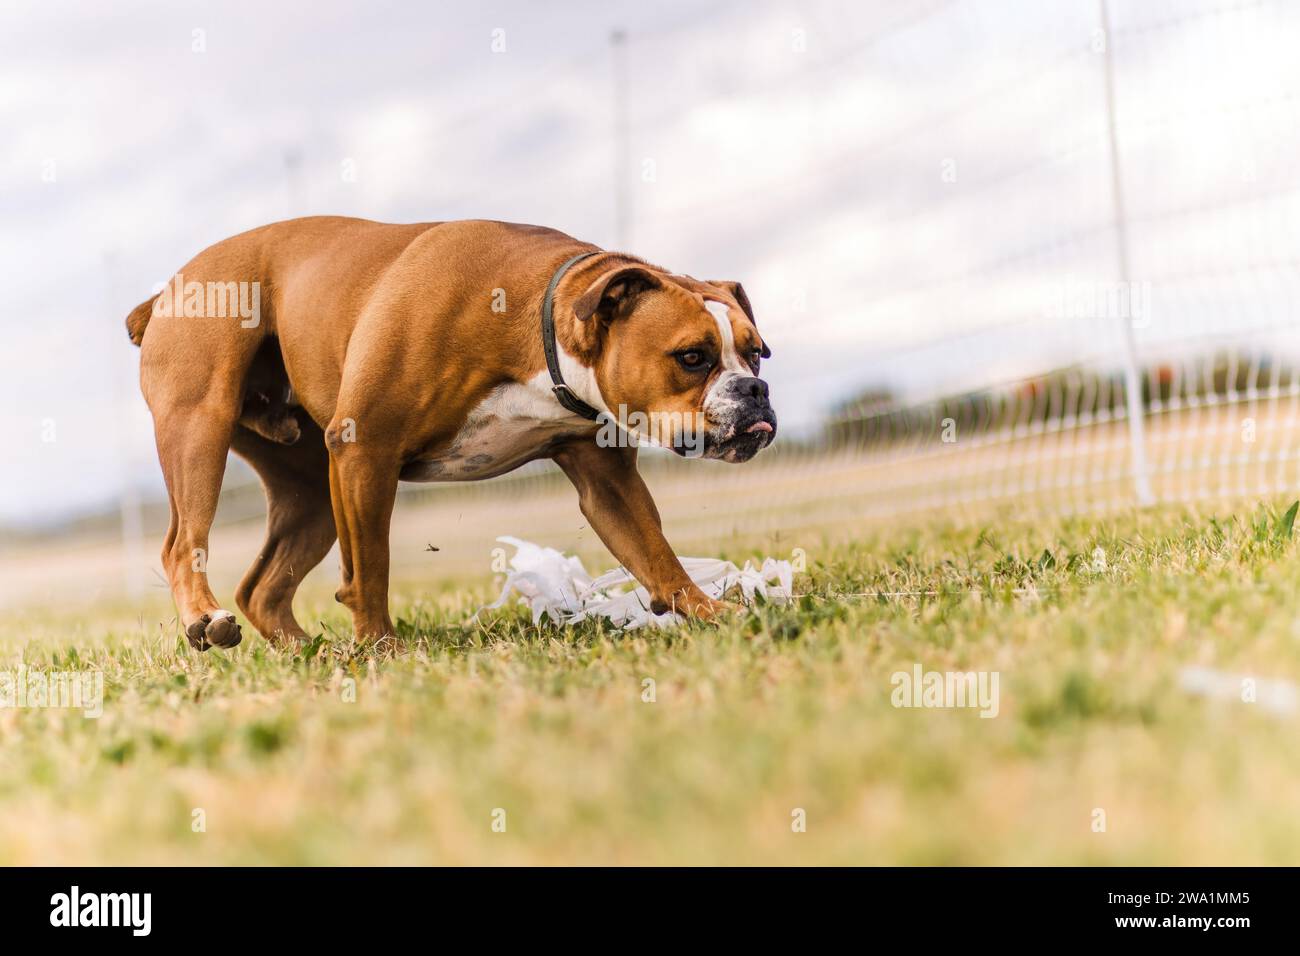 Heureux Bulldog américain collant la langue sur la journée nuageuse dans l'herbe Banque D'Images